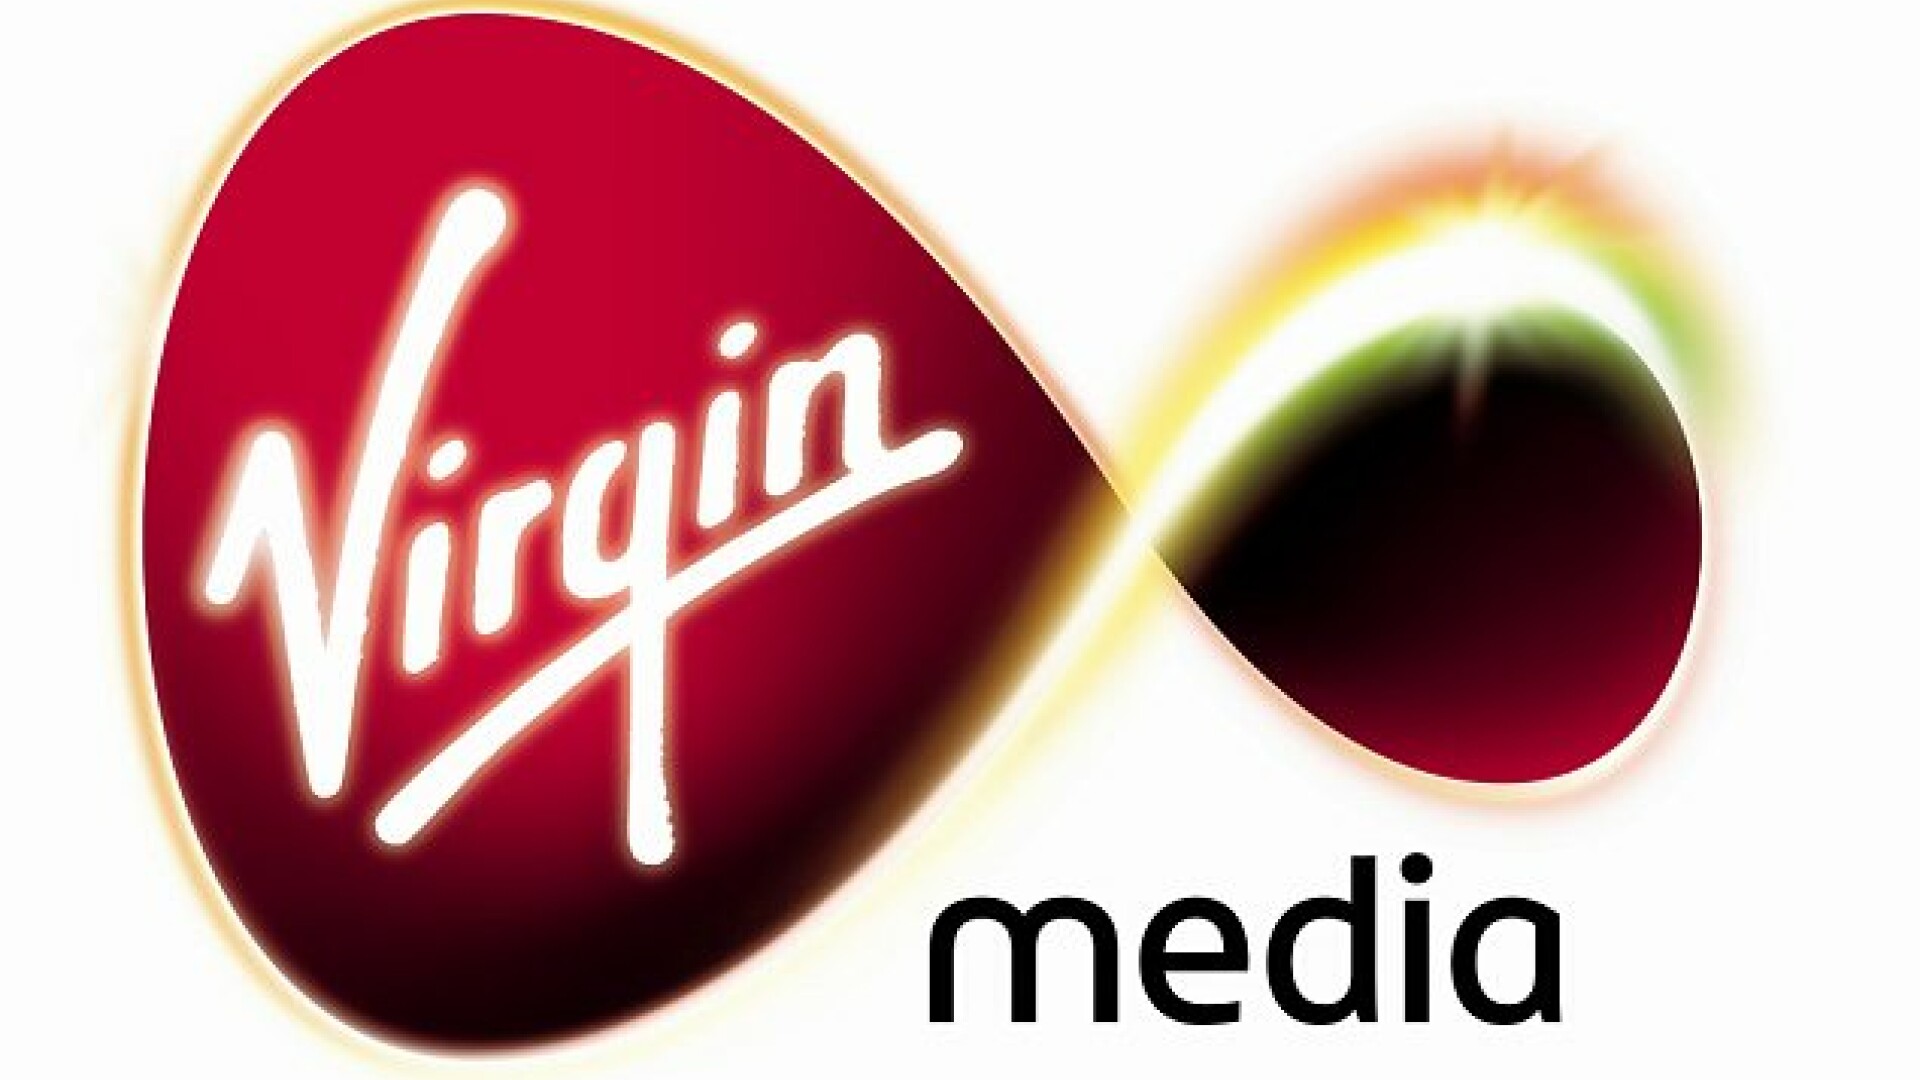 sigla Virgin Media